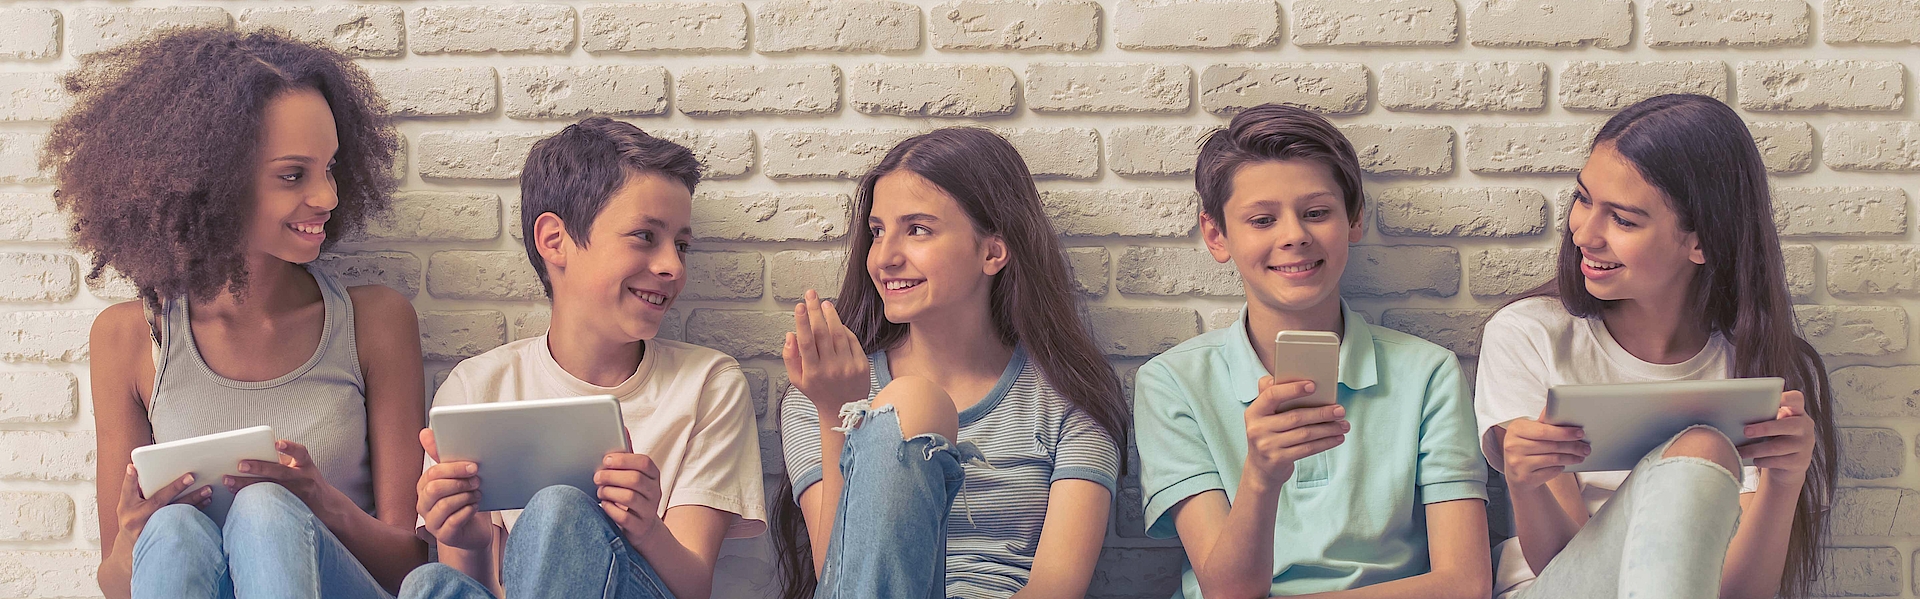 Jungen und Mädchen im Teenageralter verwenden technische Geräte, sprechen und lächeln, sitzen auf weißer Ziegelwand.